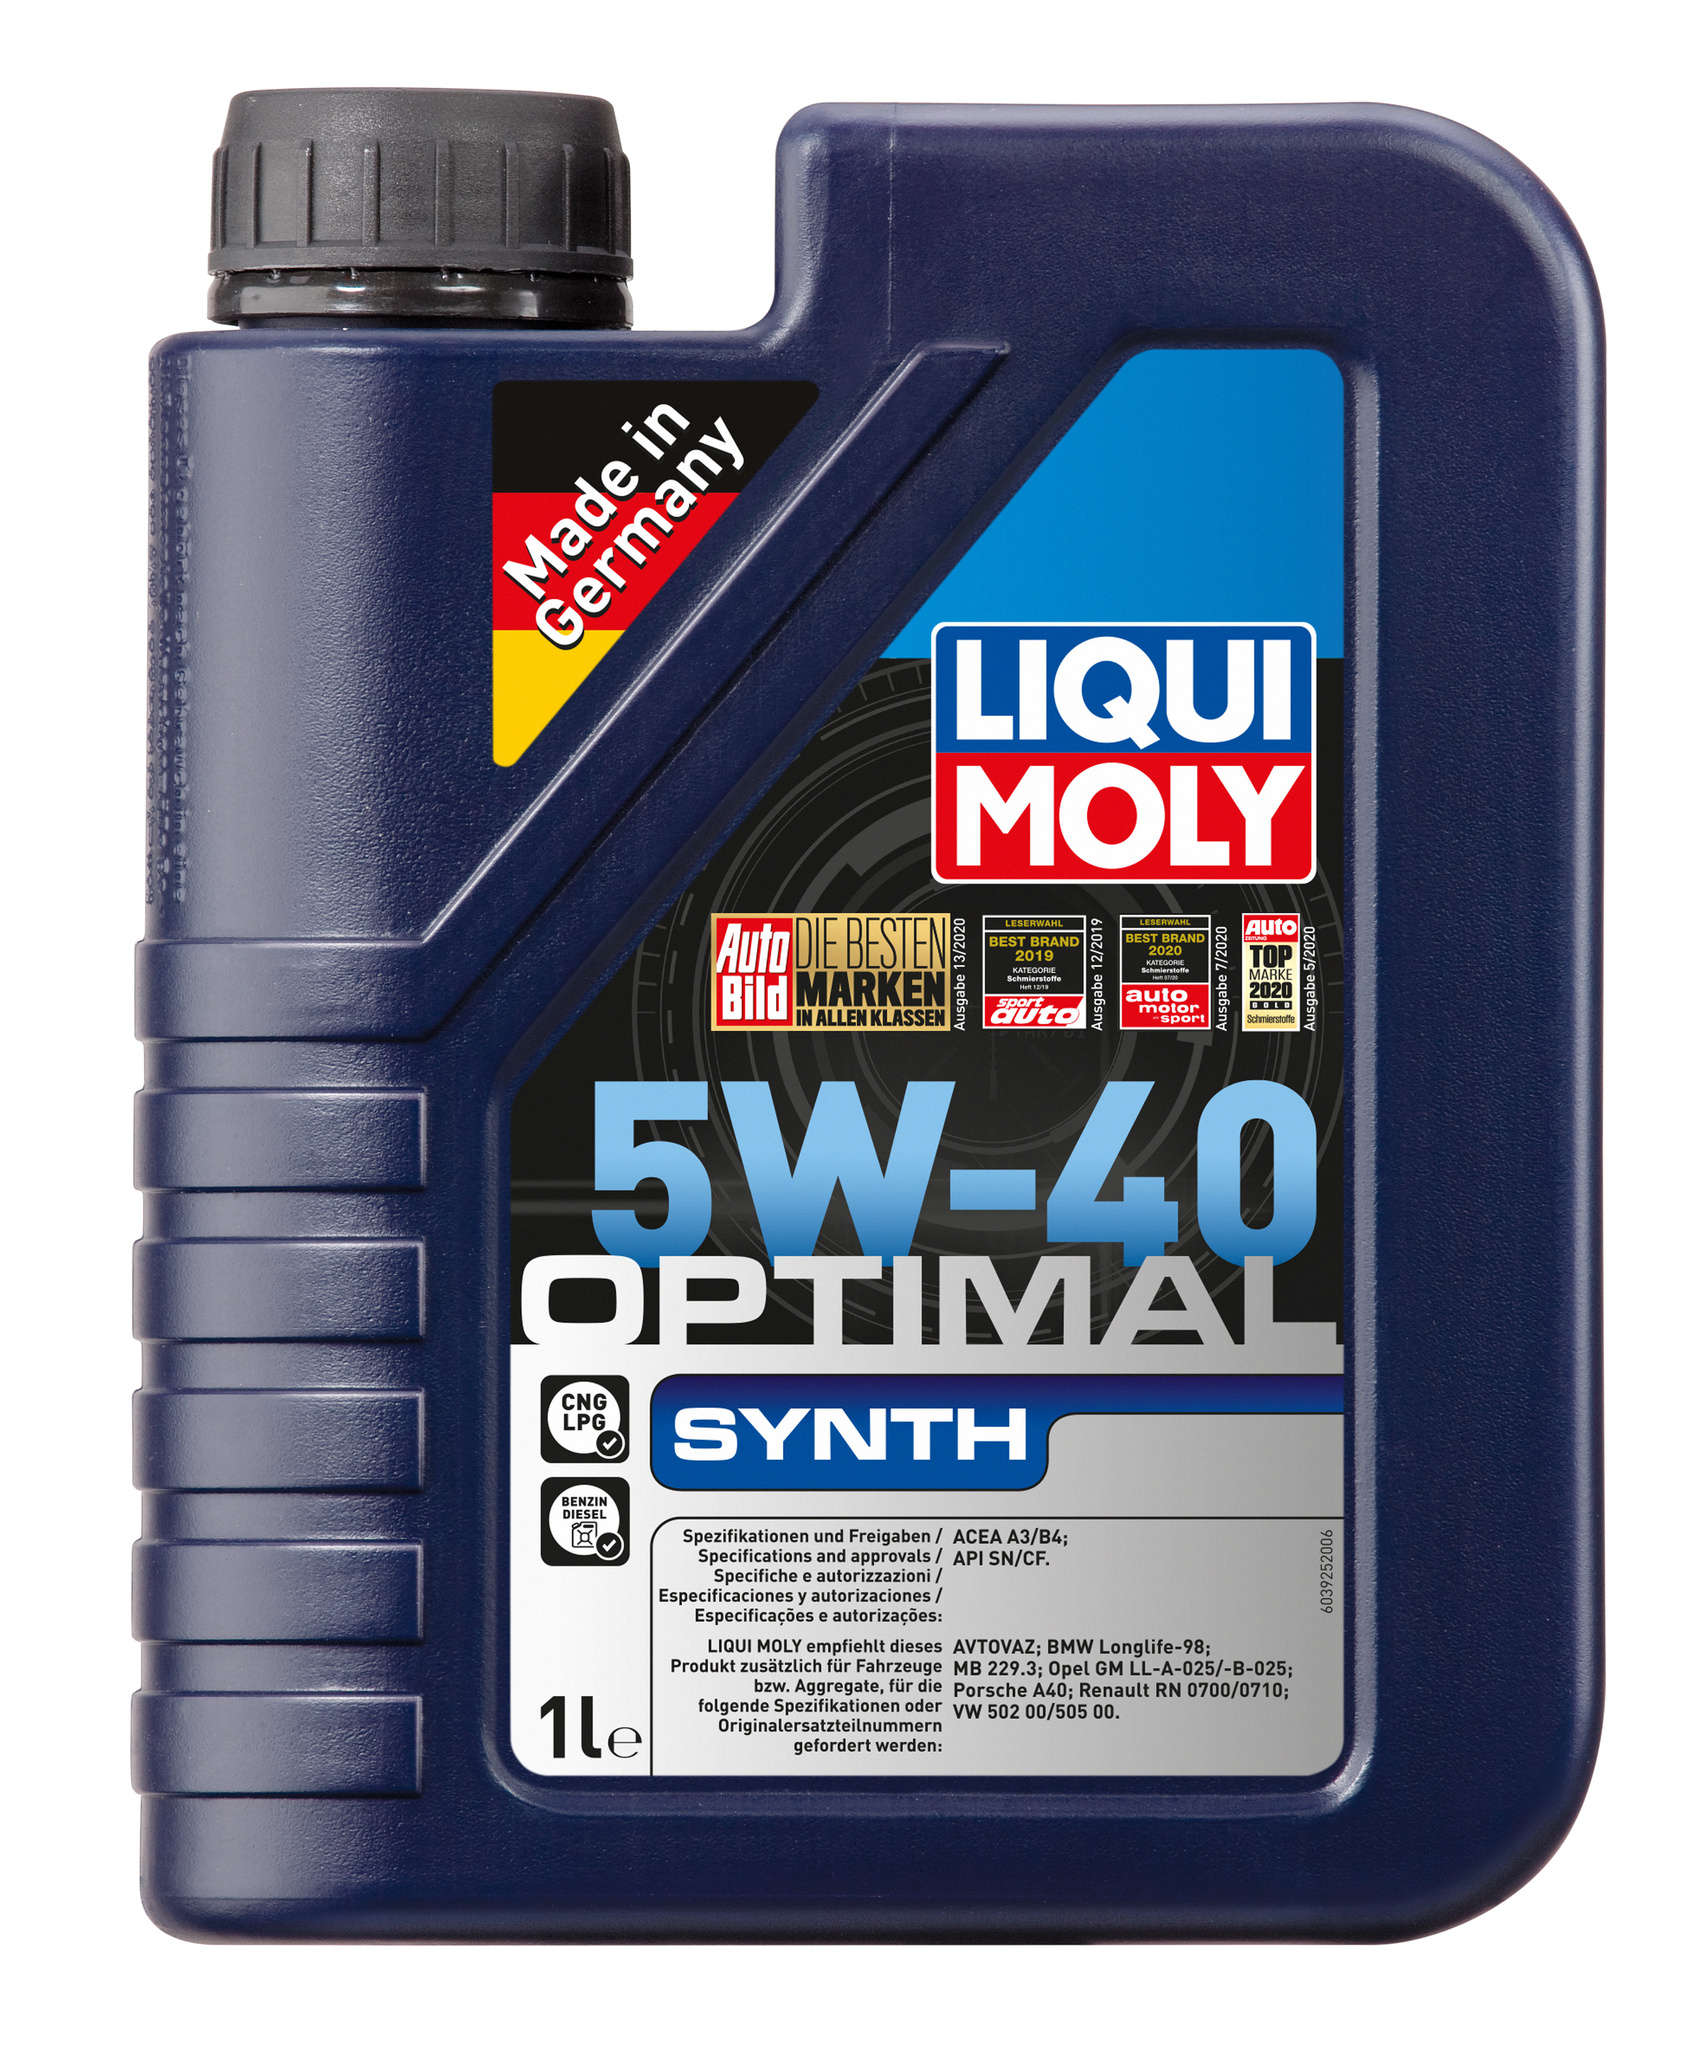 Liqui Moly Optimal Synth 5W40 НС-синтетическое моторное масло